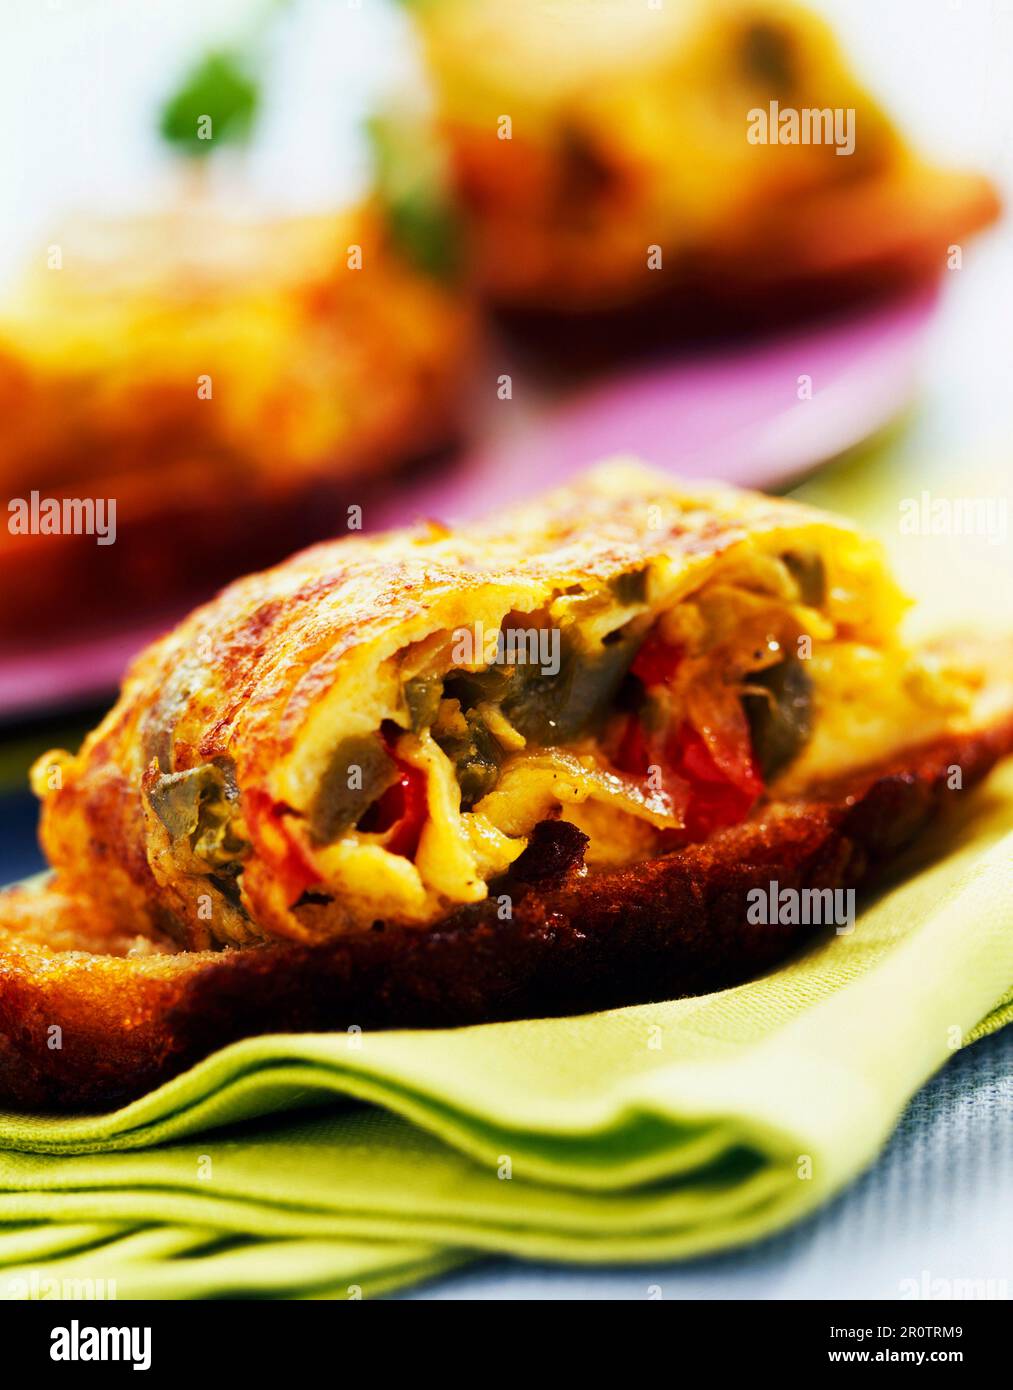 spanish omelette sandwich Stock Photo